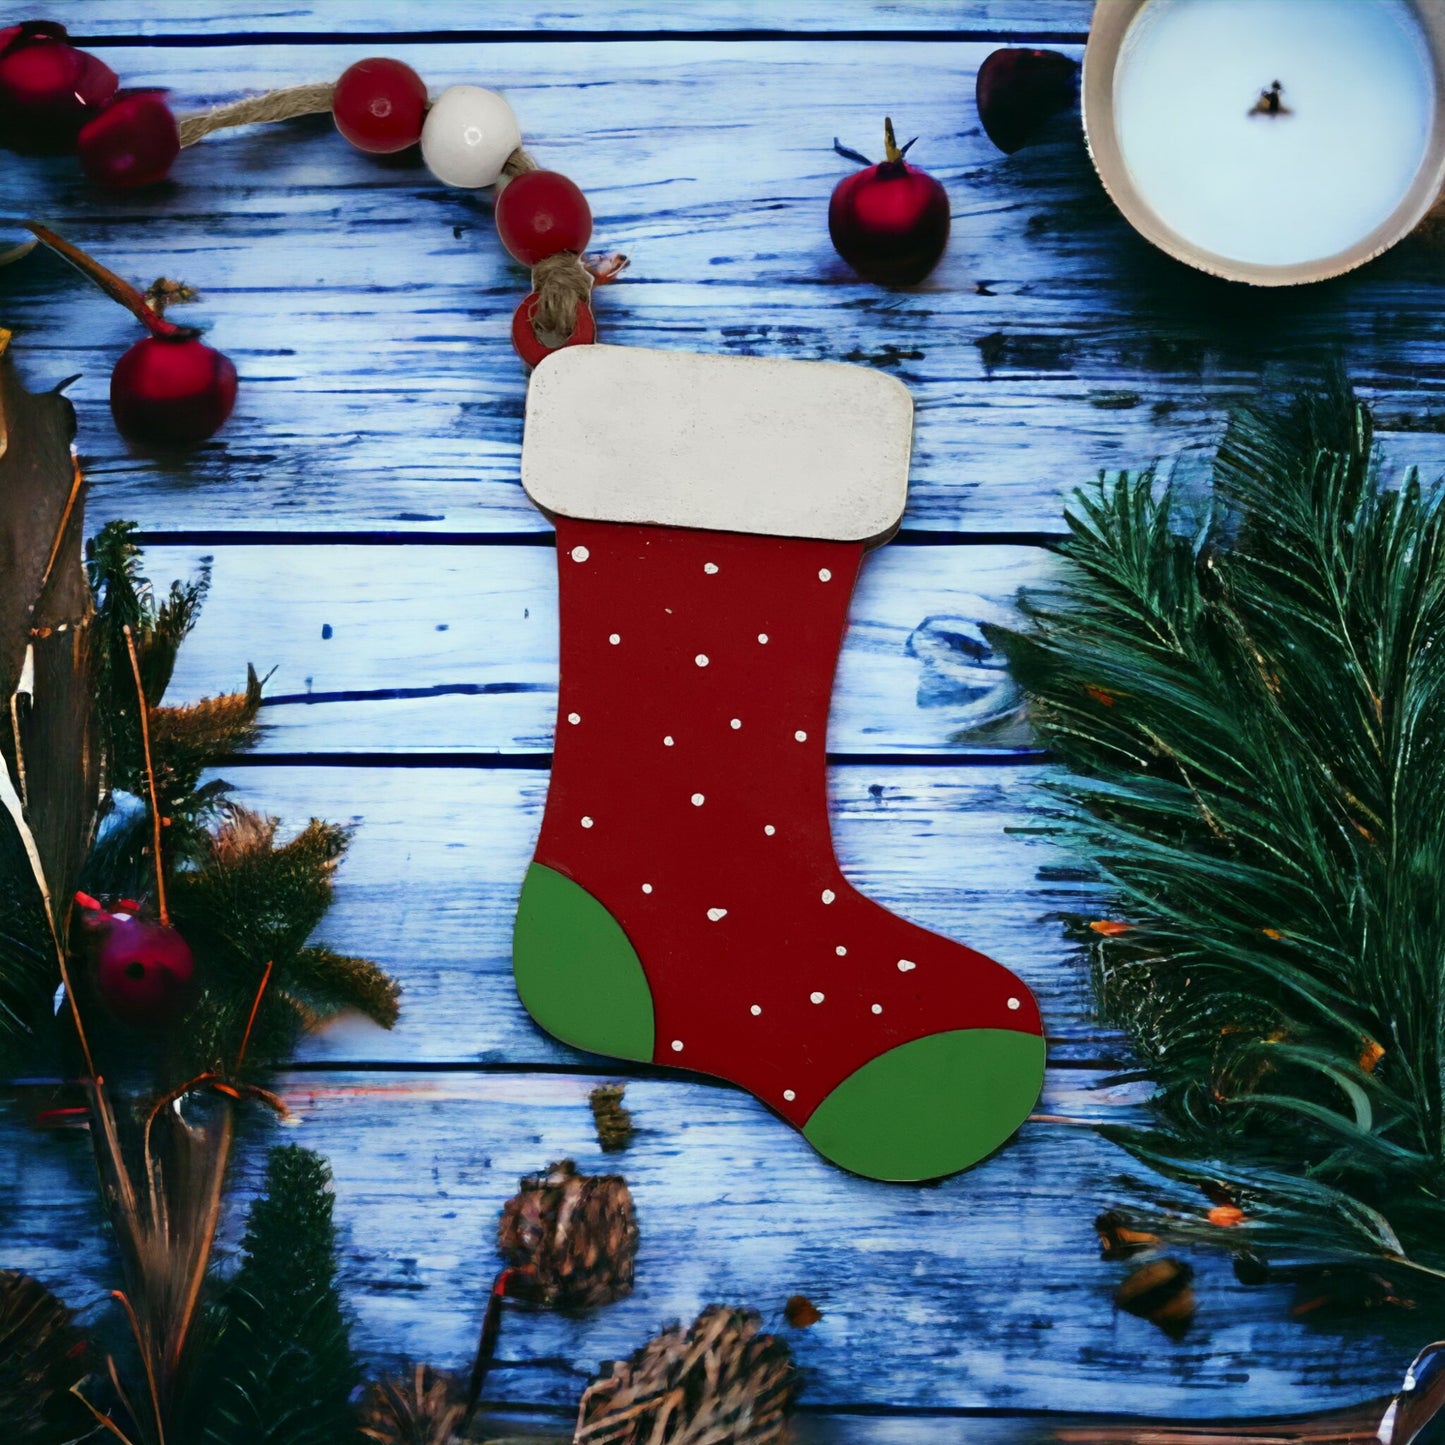 Christmas Ornament - Red Stocking Sock - Money/Gift Card Holder